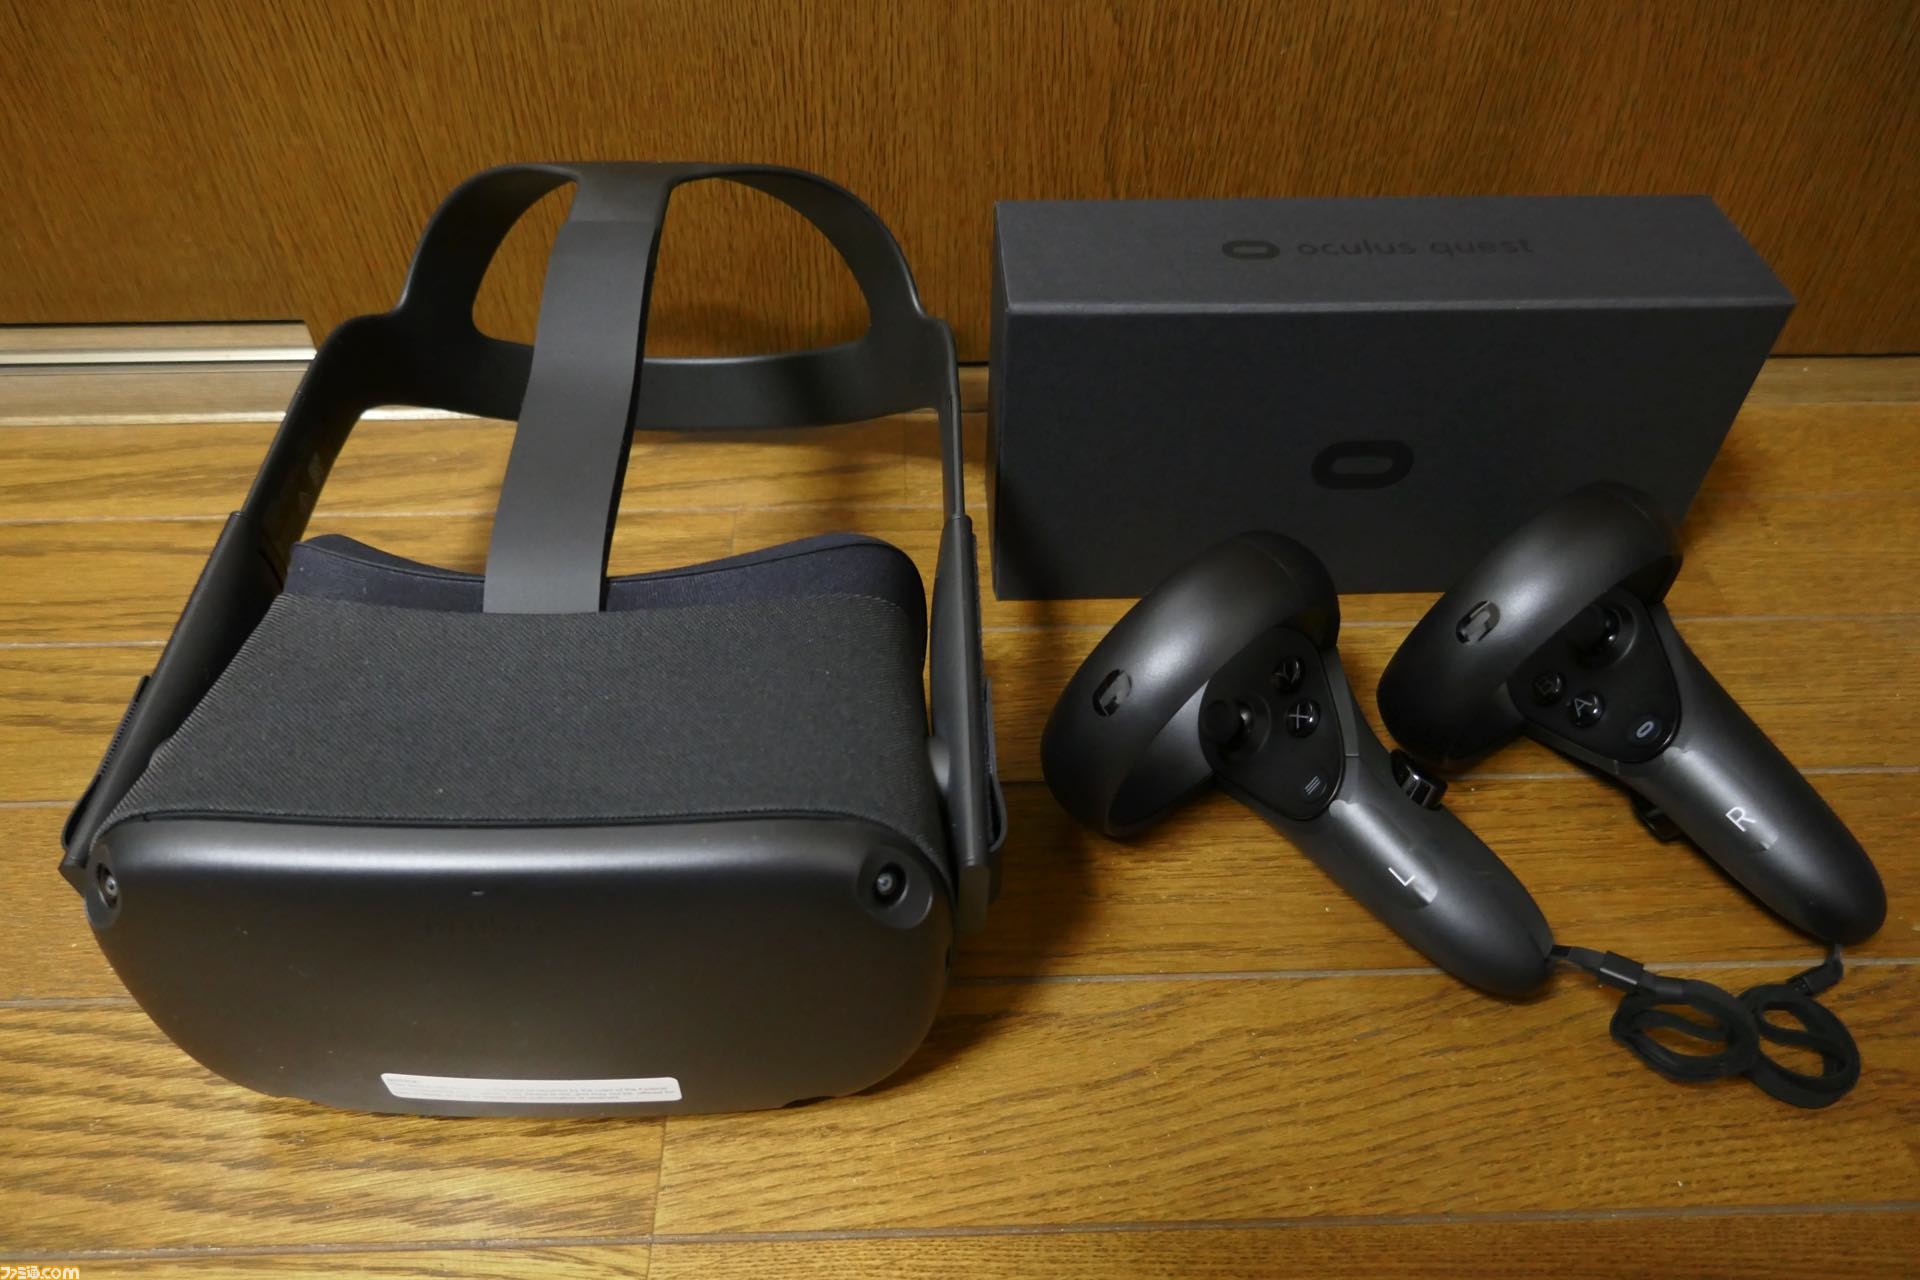 話題の“Oculus Quest”を開封。自由に動き回れるスタンドアローン型VR 